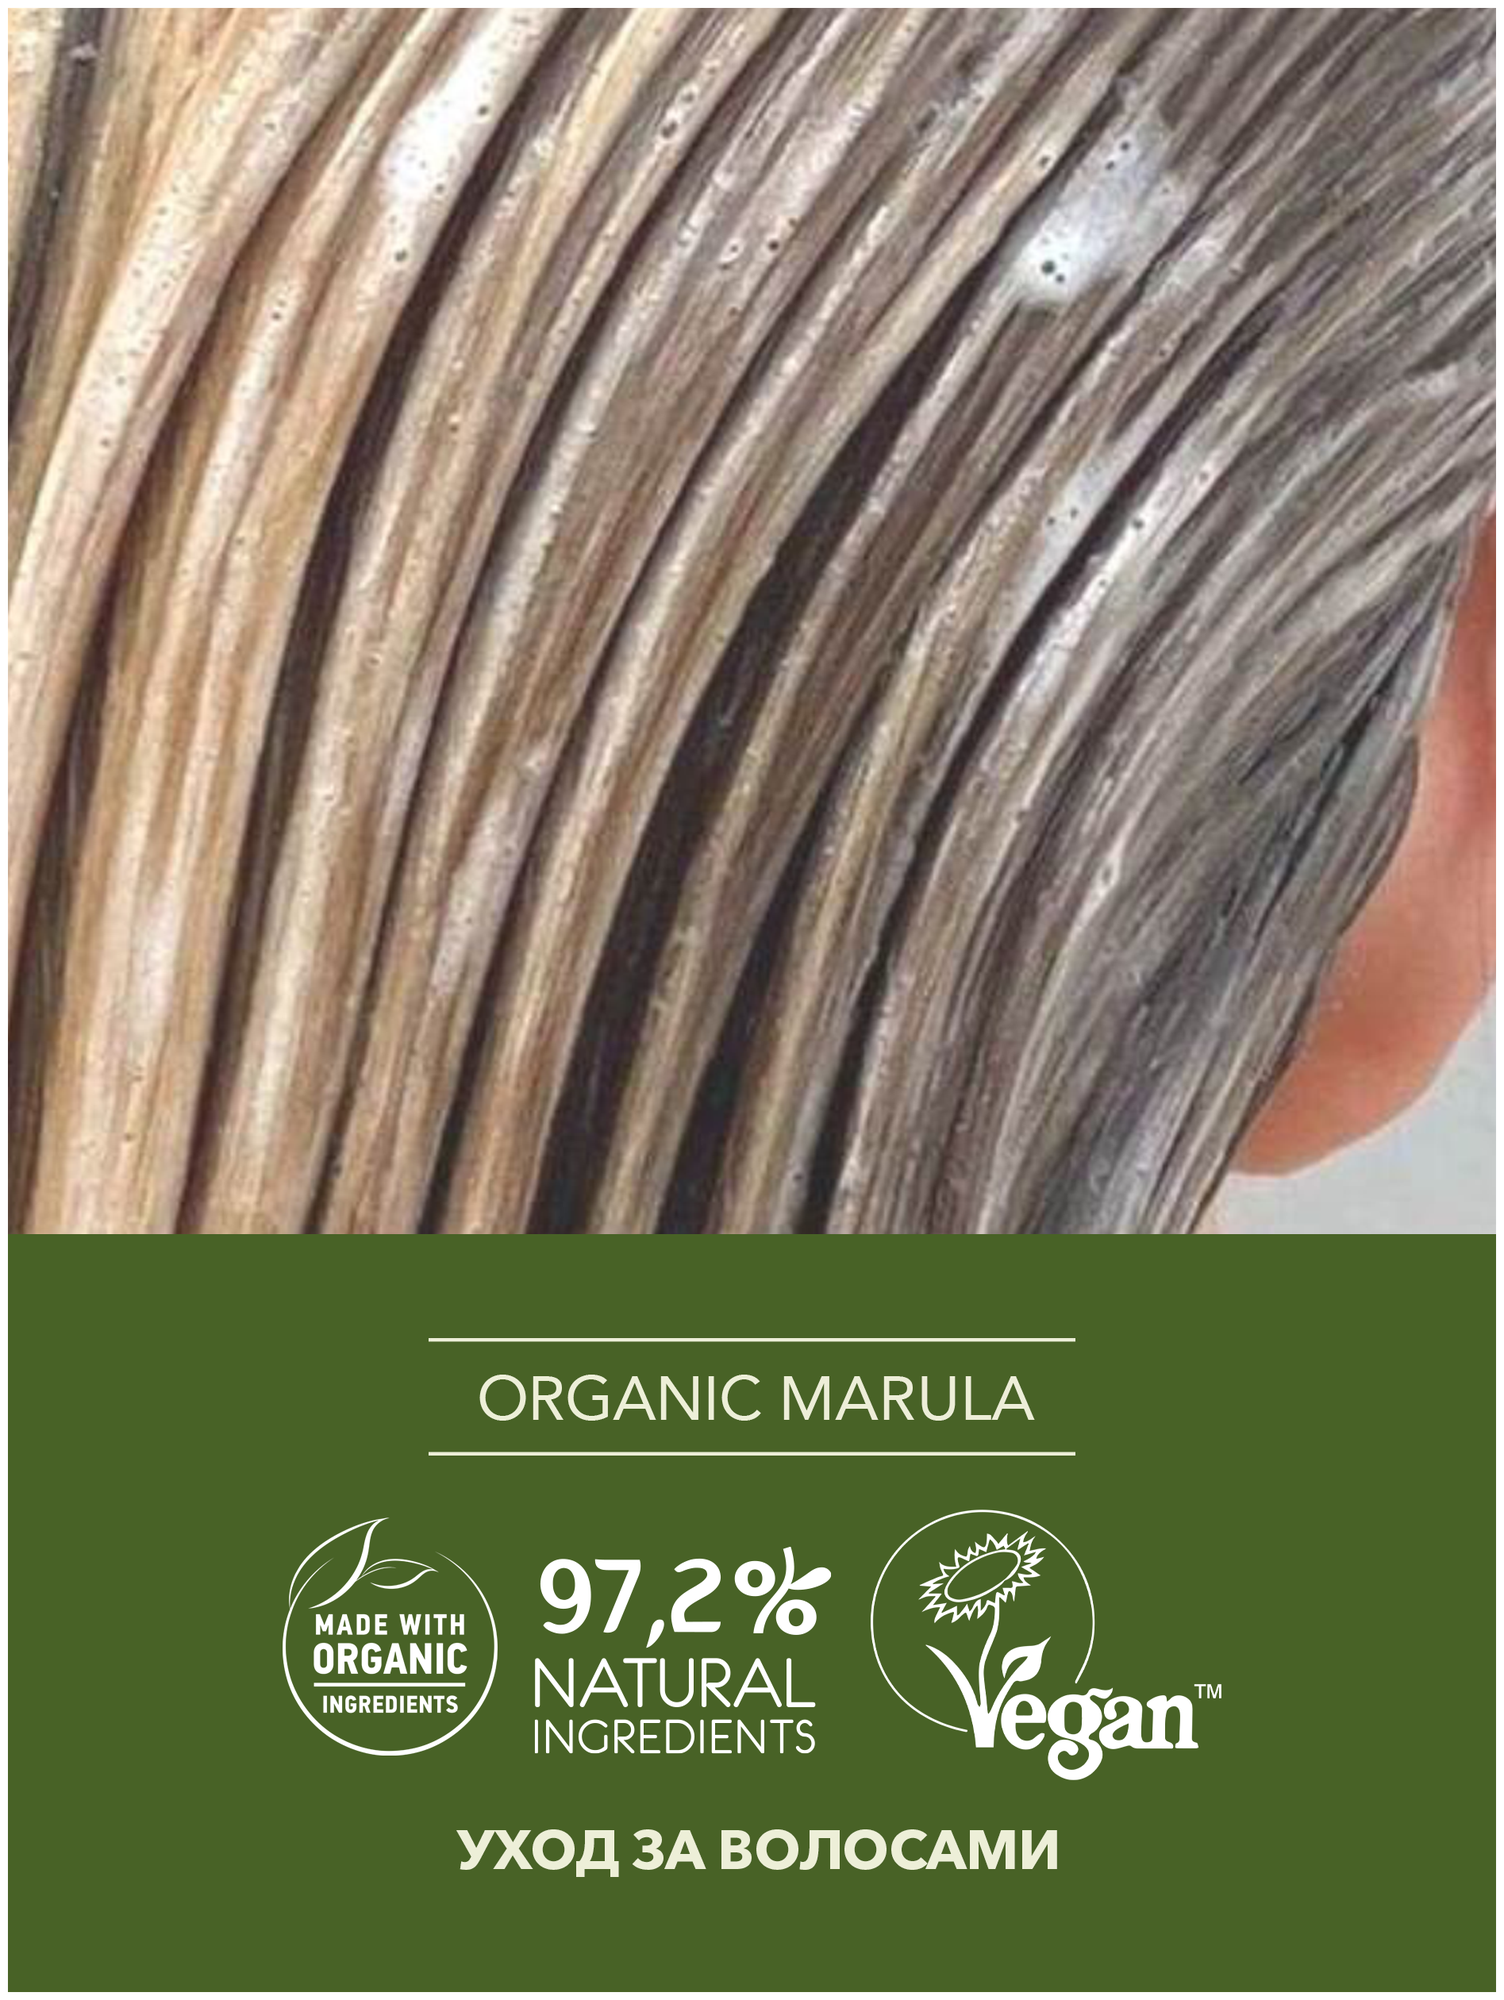 Ecolatier GREEN Бальзам для волос Здоровье & Красота Серия ORGANIC MARULA, 250 мл